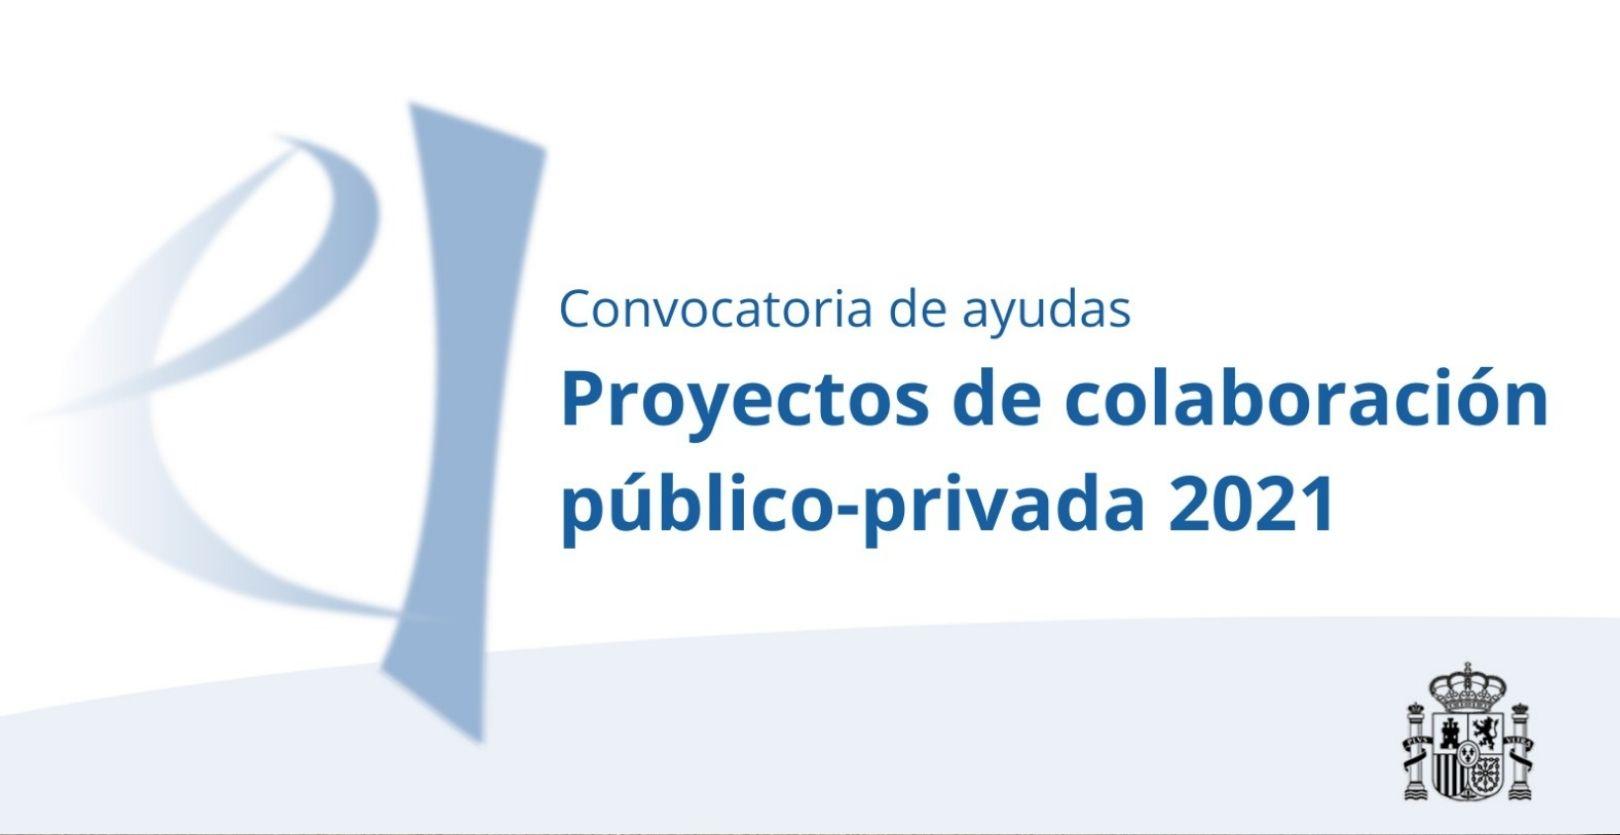 La Agencia Estatal de Investigación duplica las ayudas directas a proyectos de colaboración público-privada en su convocatoria 2021